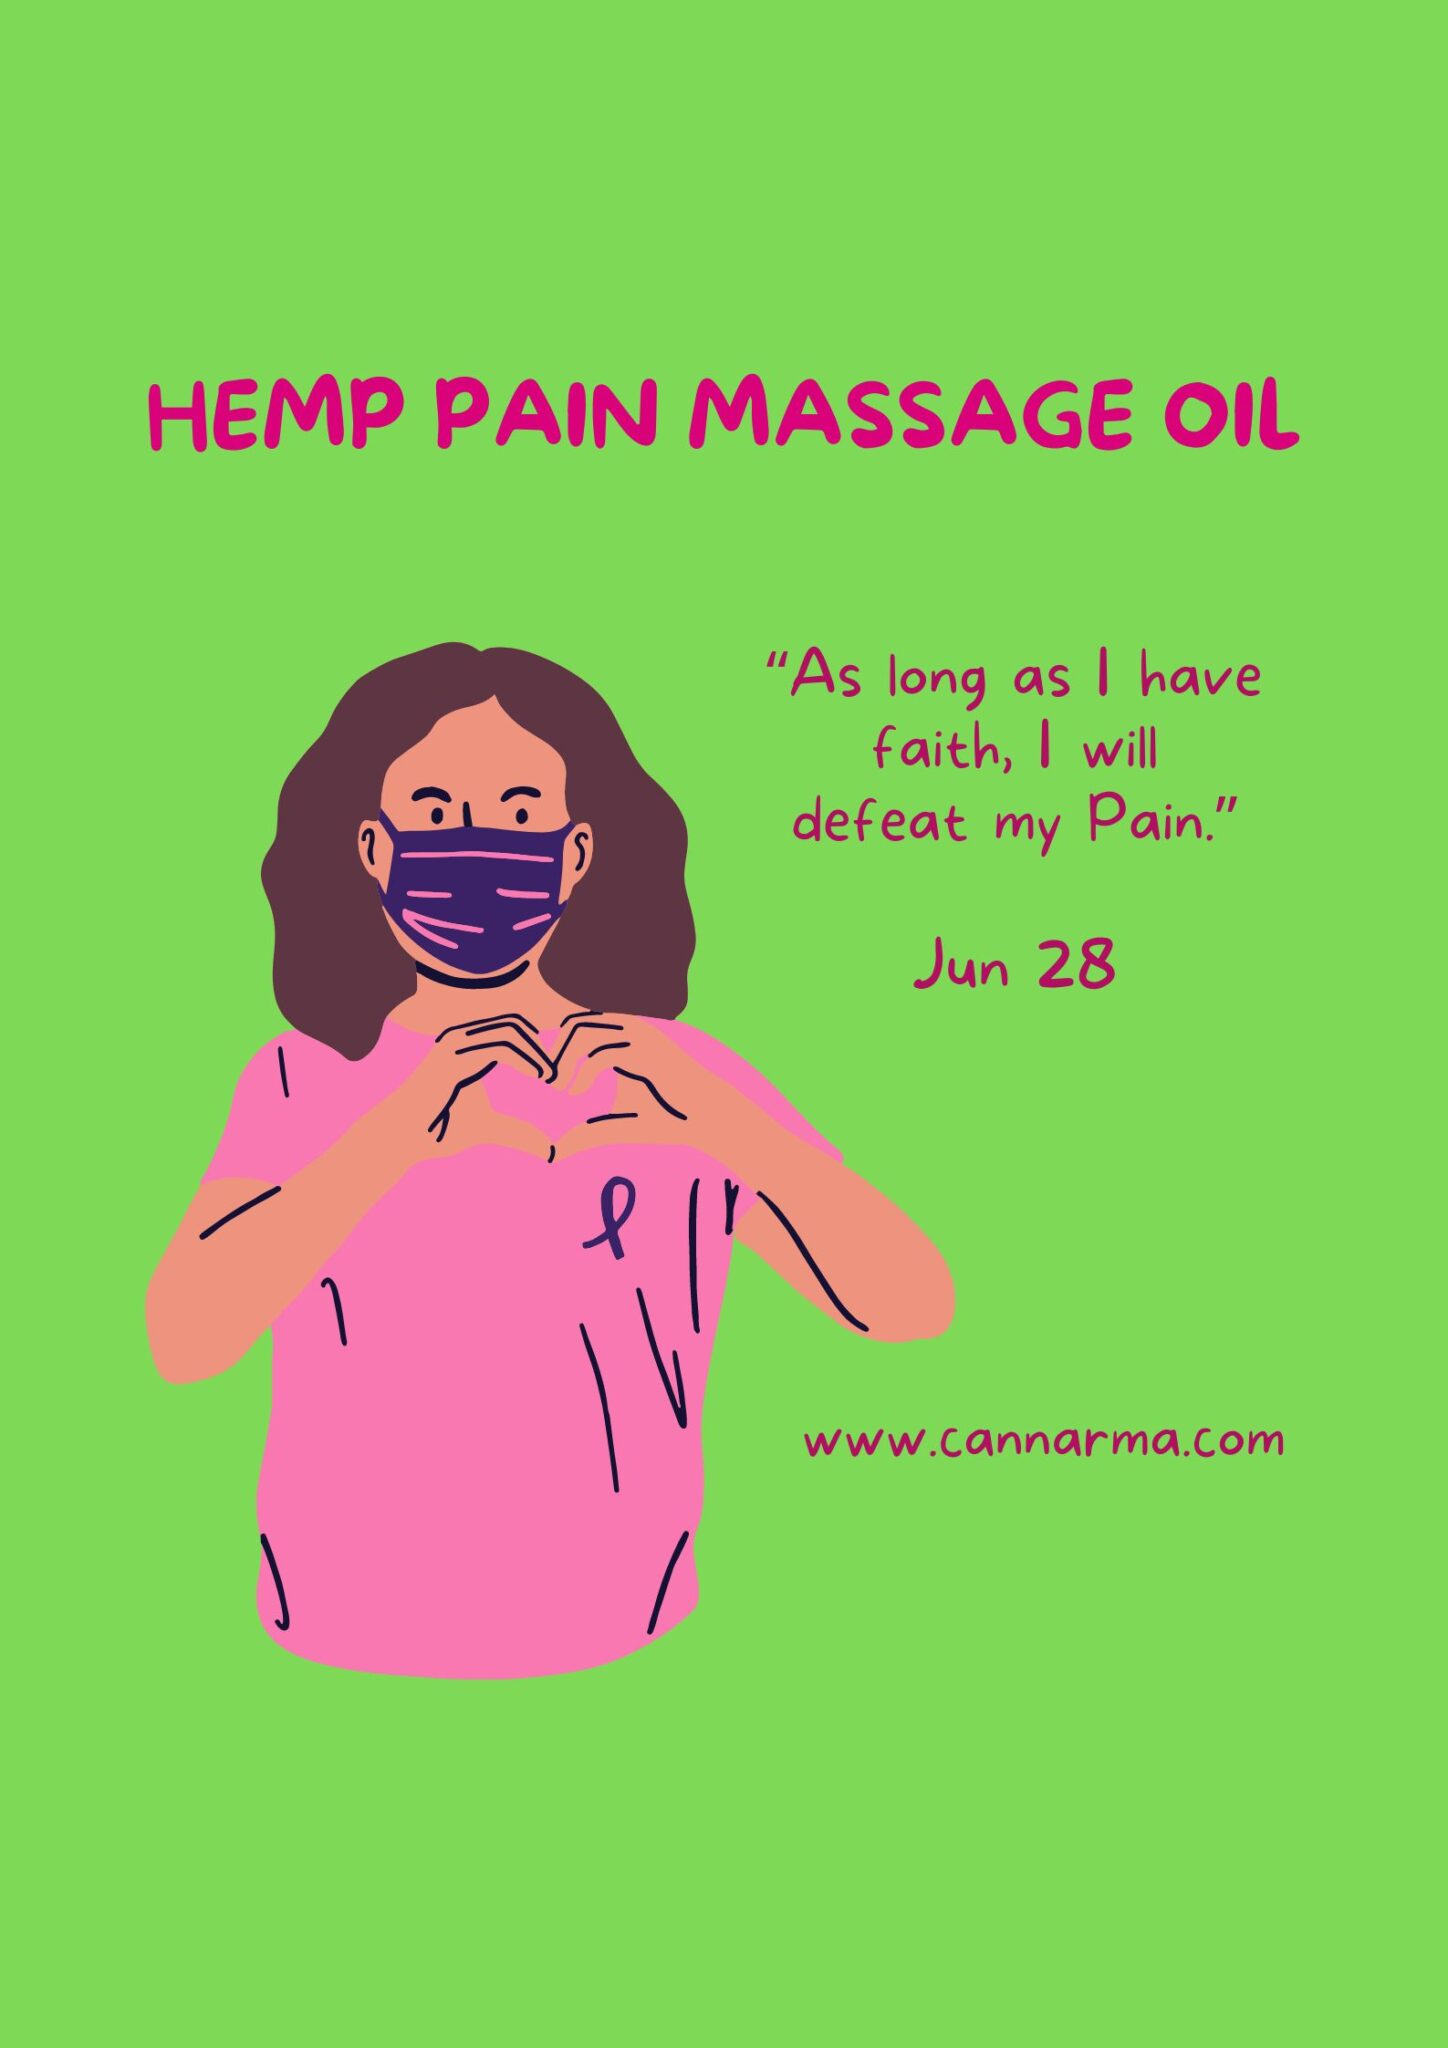 Pain massage oil